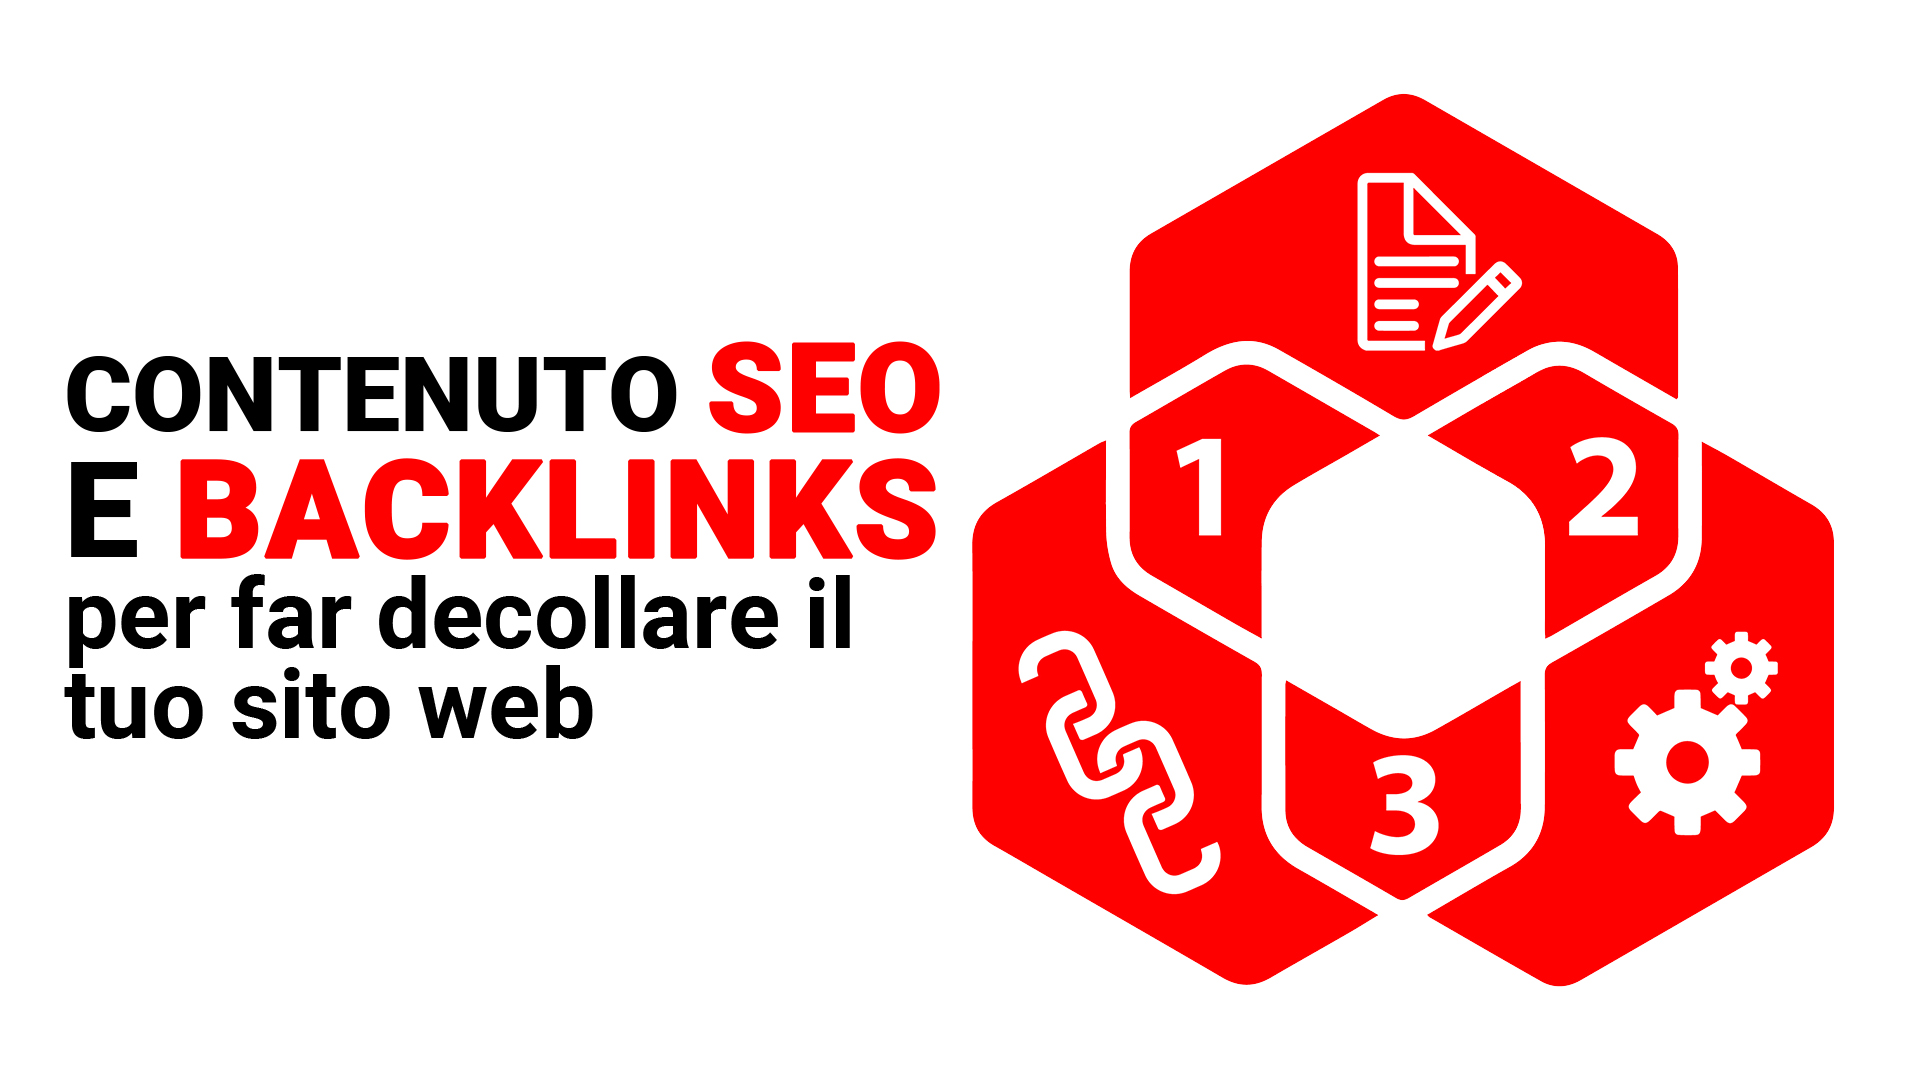 Contenuto SEO e backlink per far decollare il tuo sito web